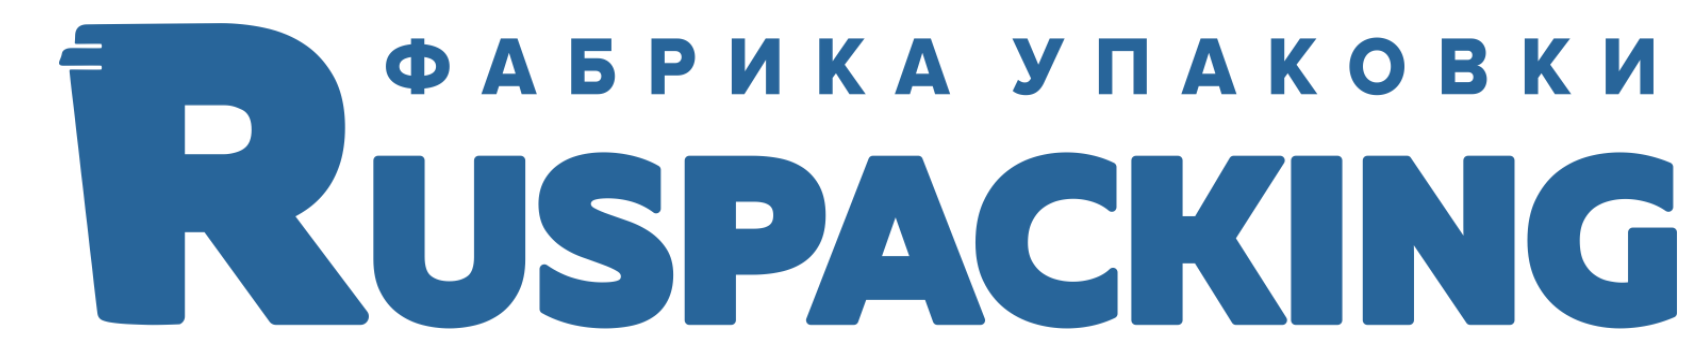 RUSPACKING – фабрика упаковки - Поселок Черепичный